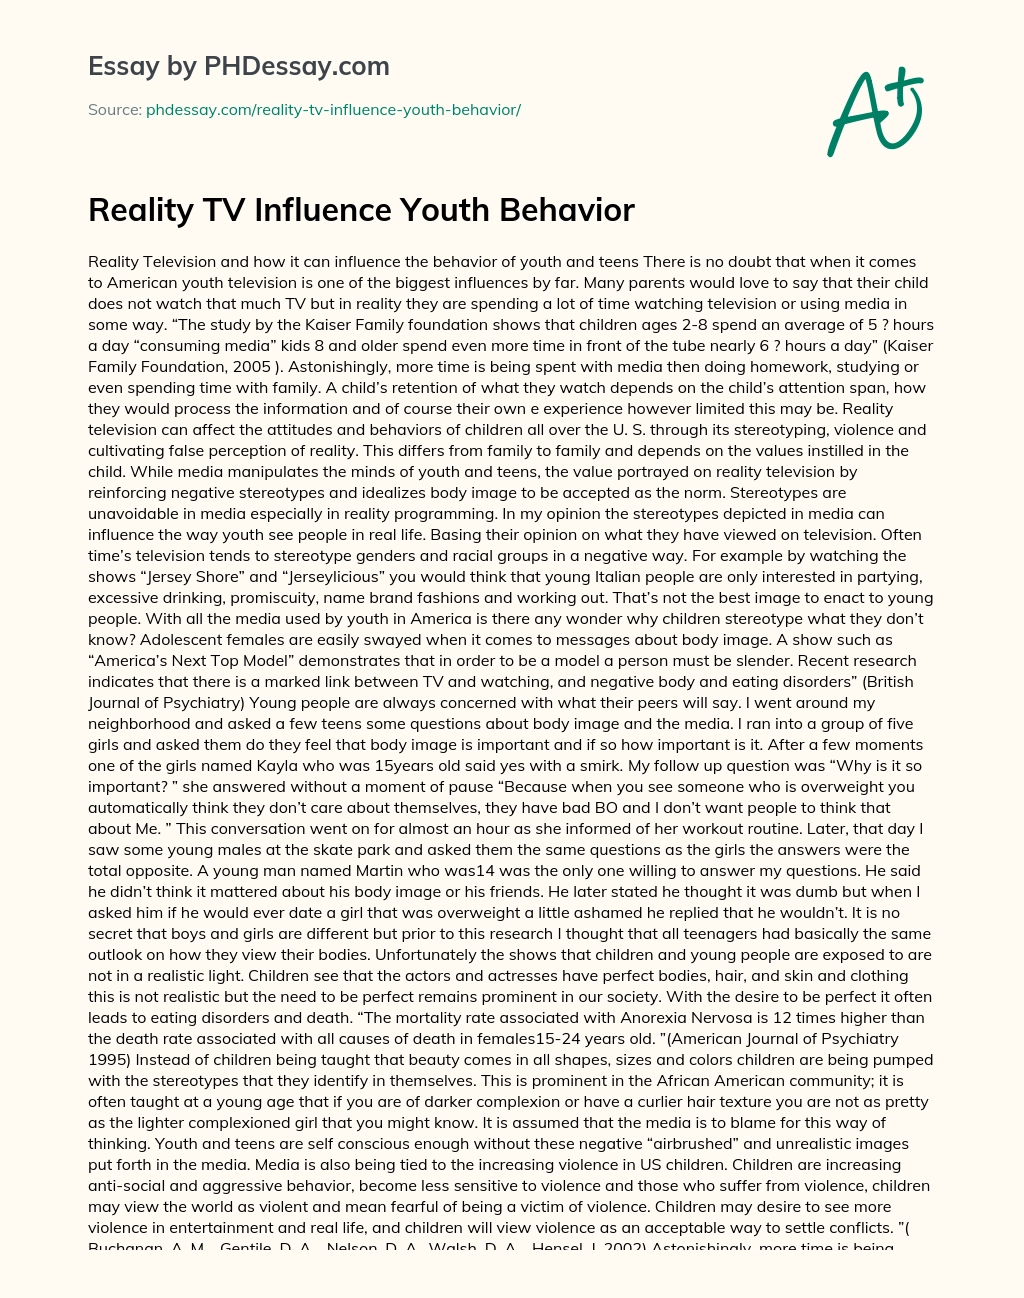 Reality TV Influence Youth Behavior essay